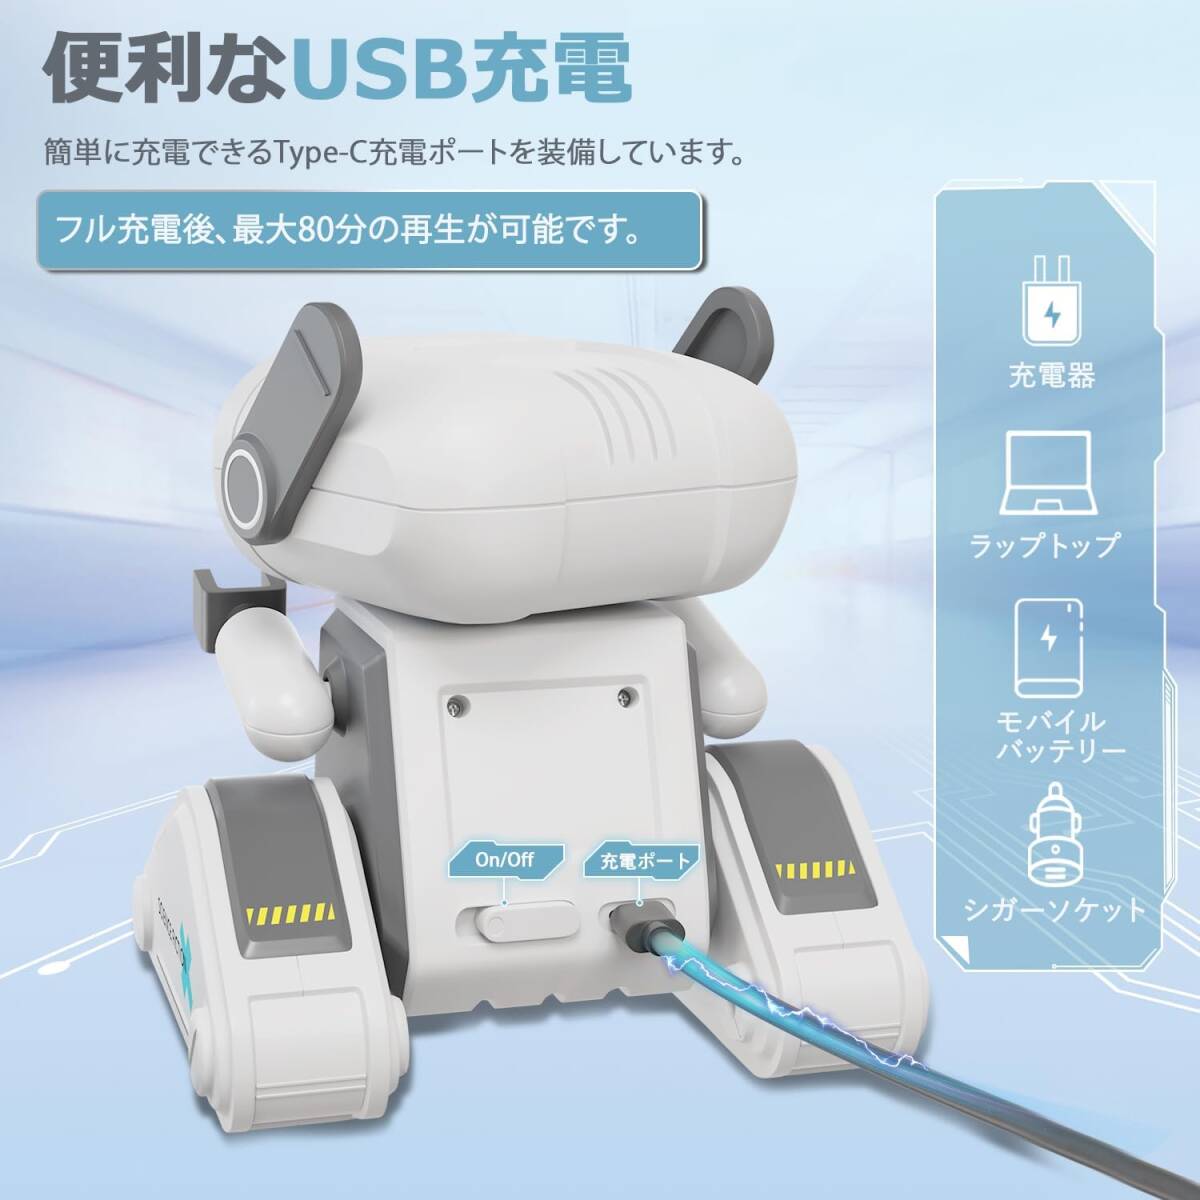 ホワイト 電動ロボット おもちゃ ラジコンロボット 2.4GHz 360°回転 LEDライト 音楽 デモ 多機能ロボット USB充_画像6